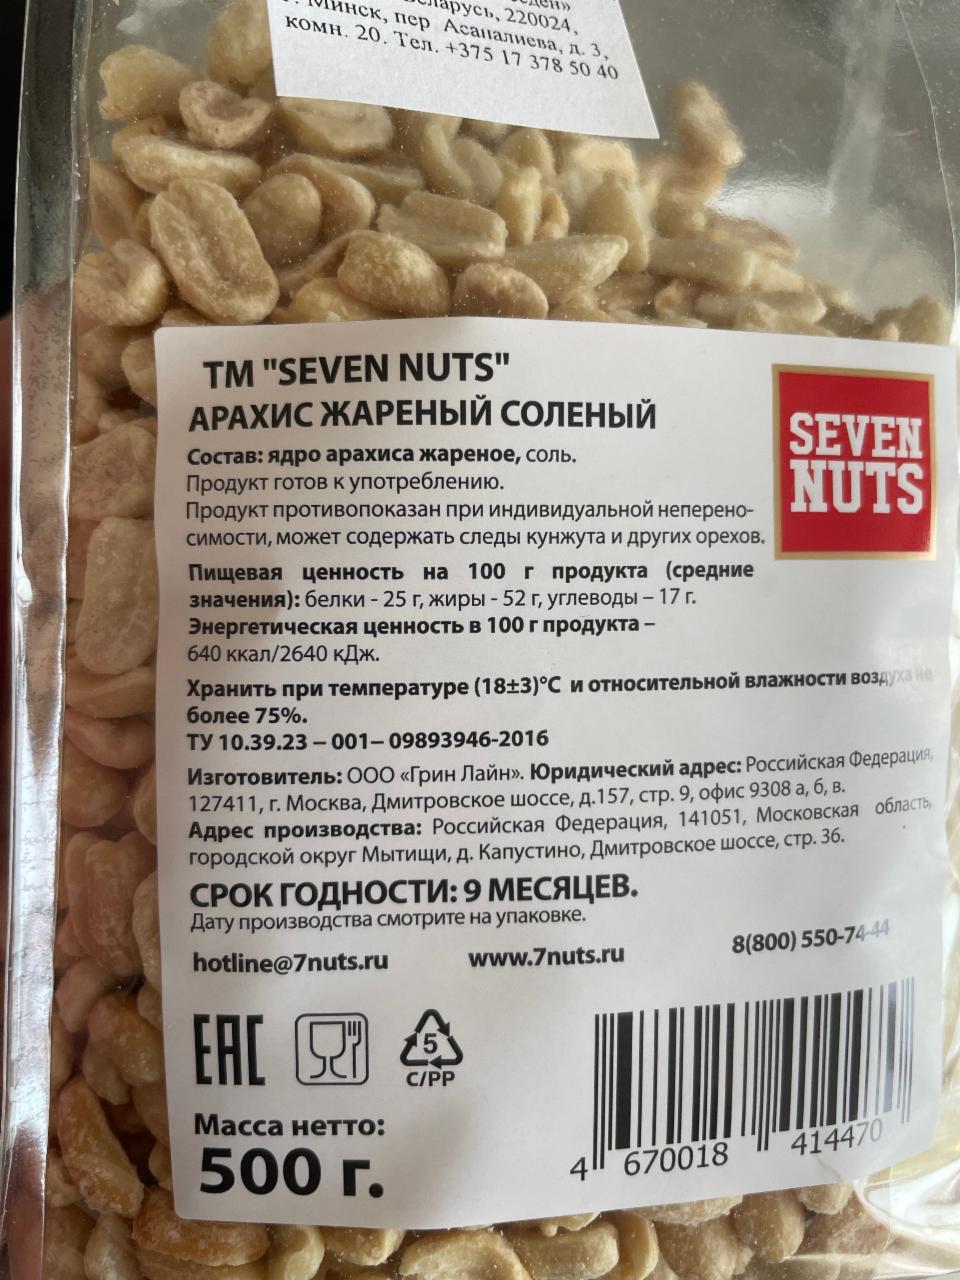 Кедровый орех калории. Арахис жареный соленый калорийность. Seven Nuts арахис. Арахис соленый калорийность. Арахис жареный калорийность.